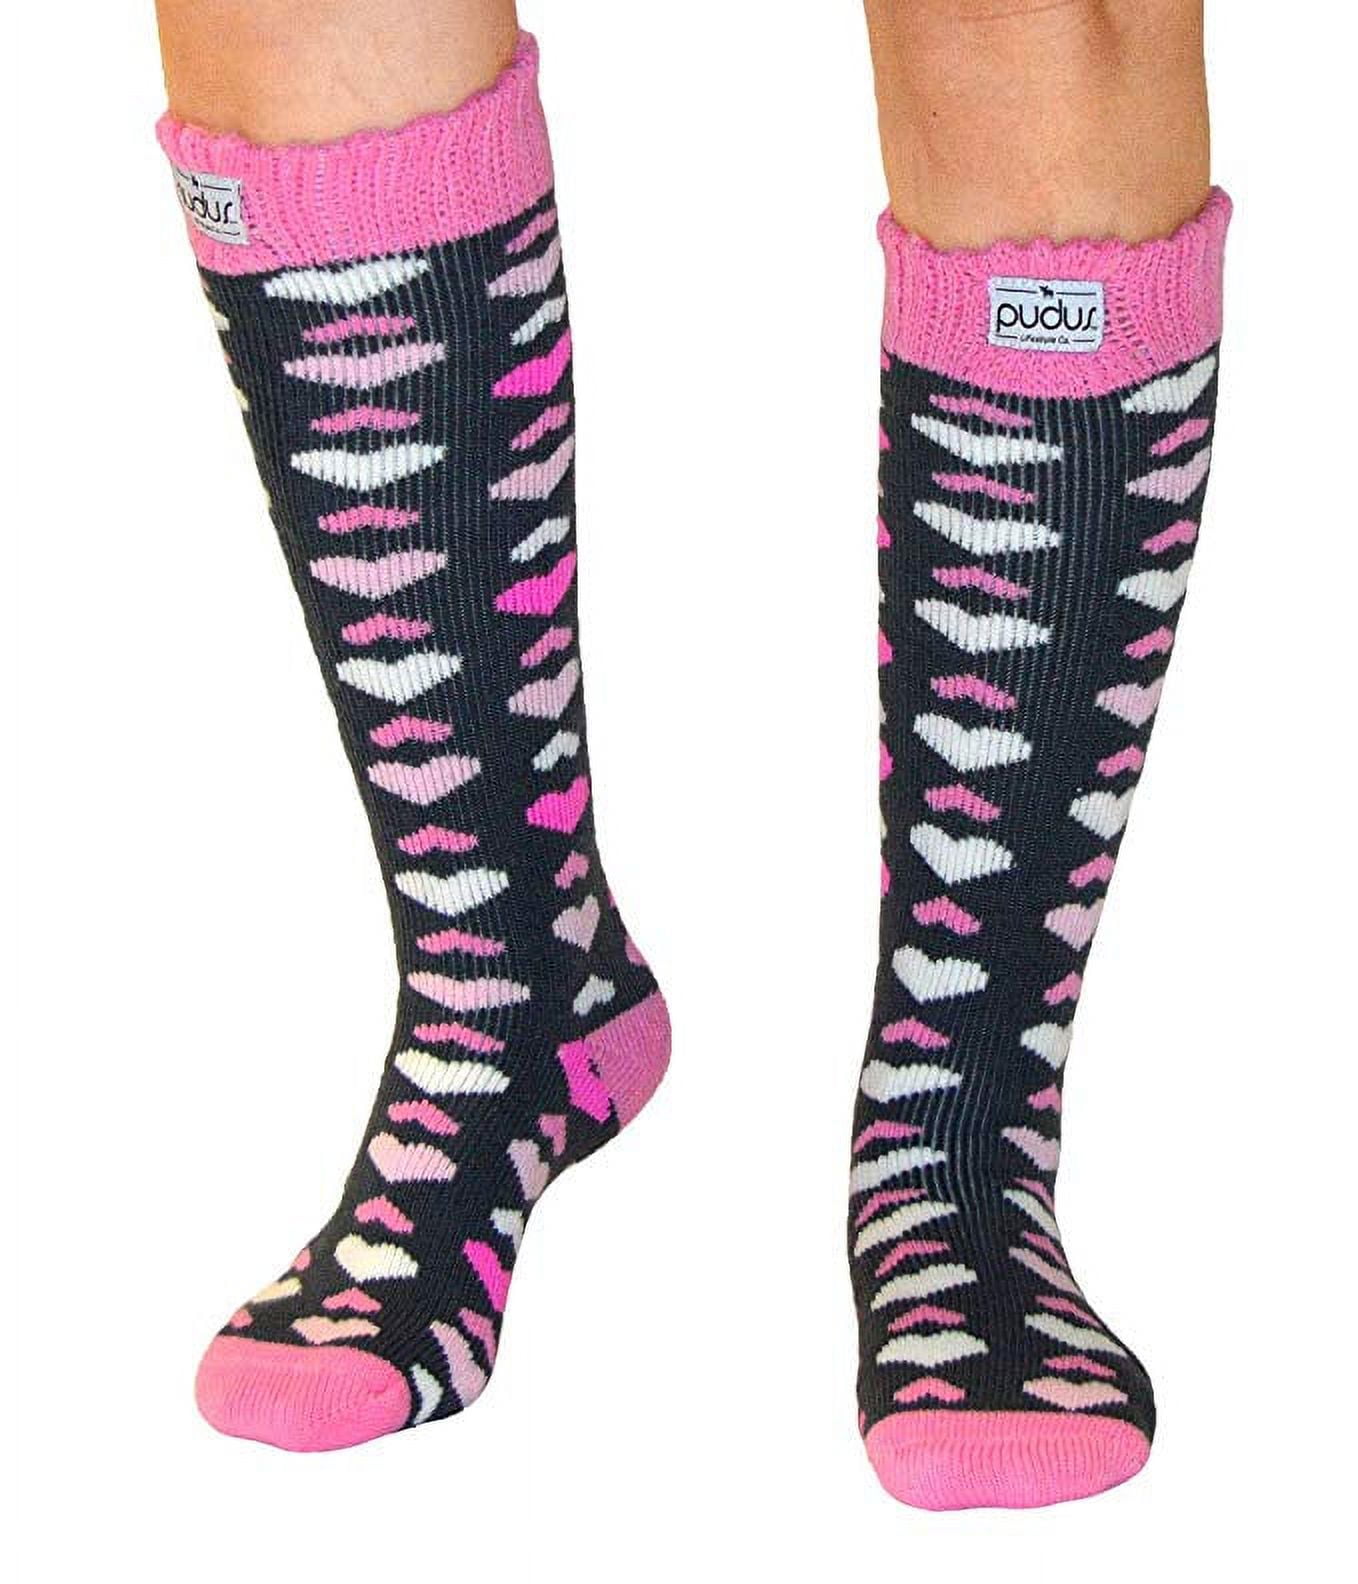 Pudus Heart Pink Adult Tall Cozy Winter Boot Socks - Walmart.com